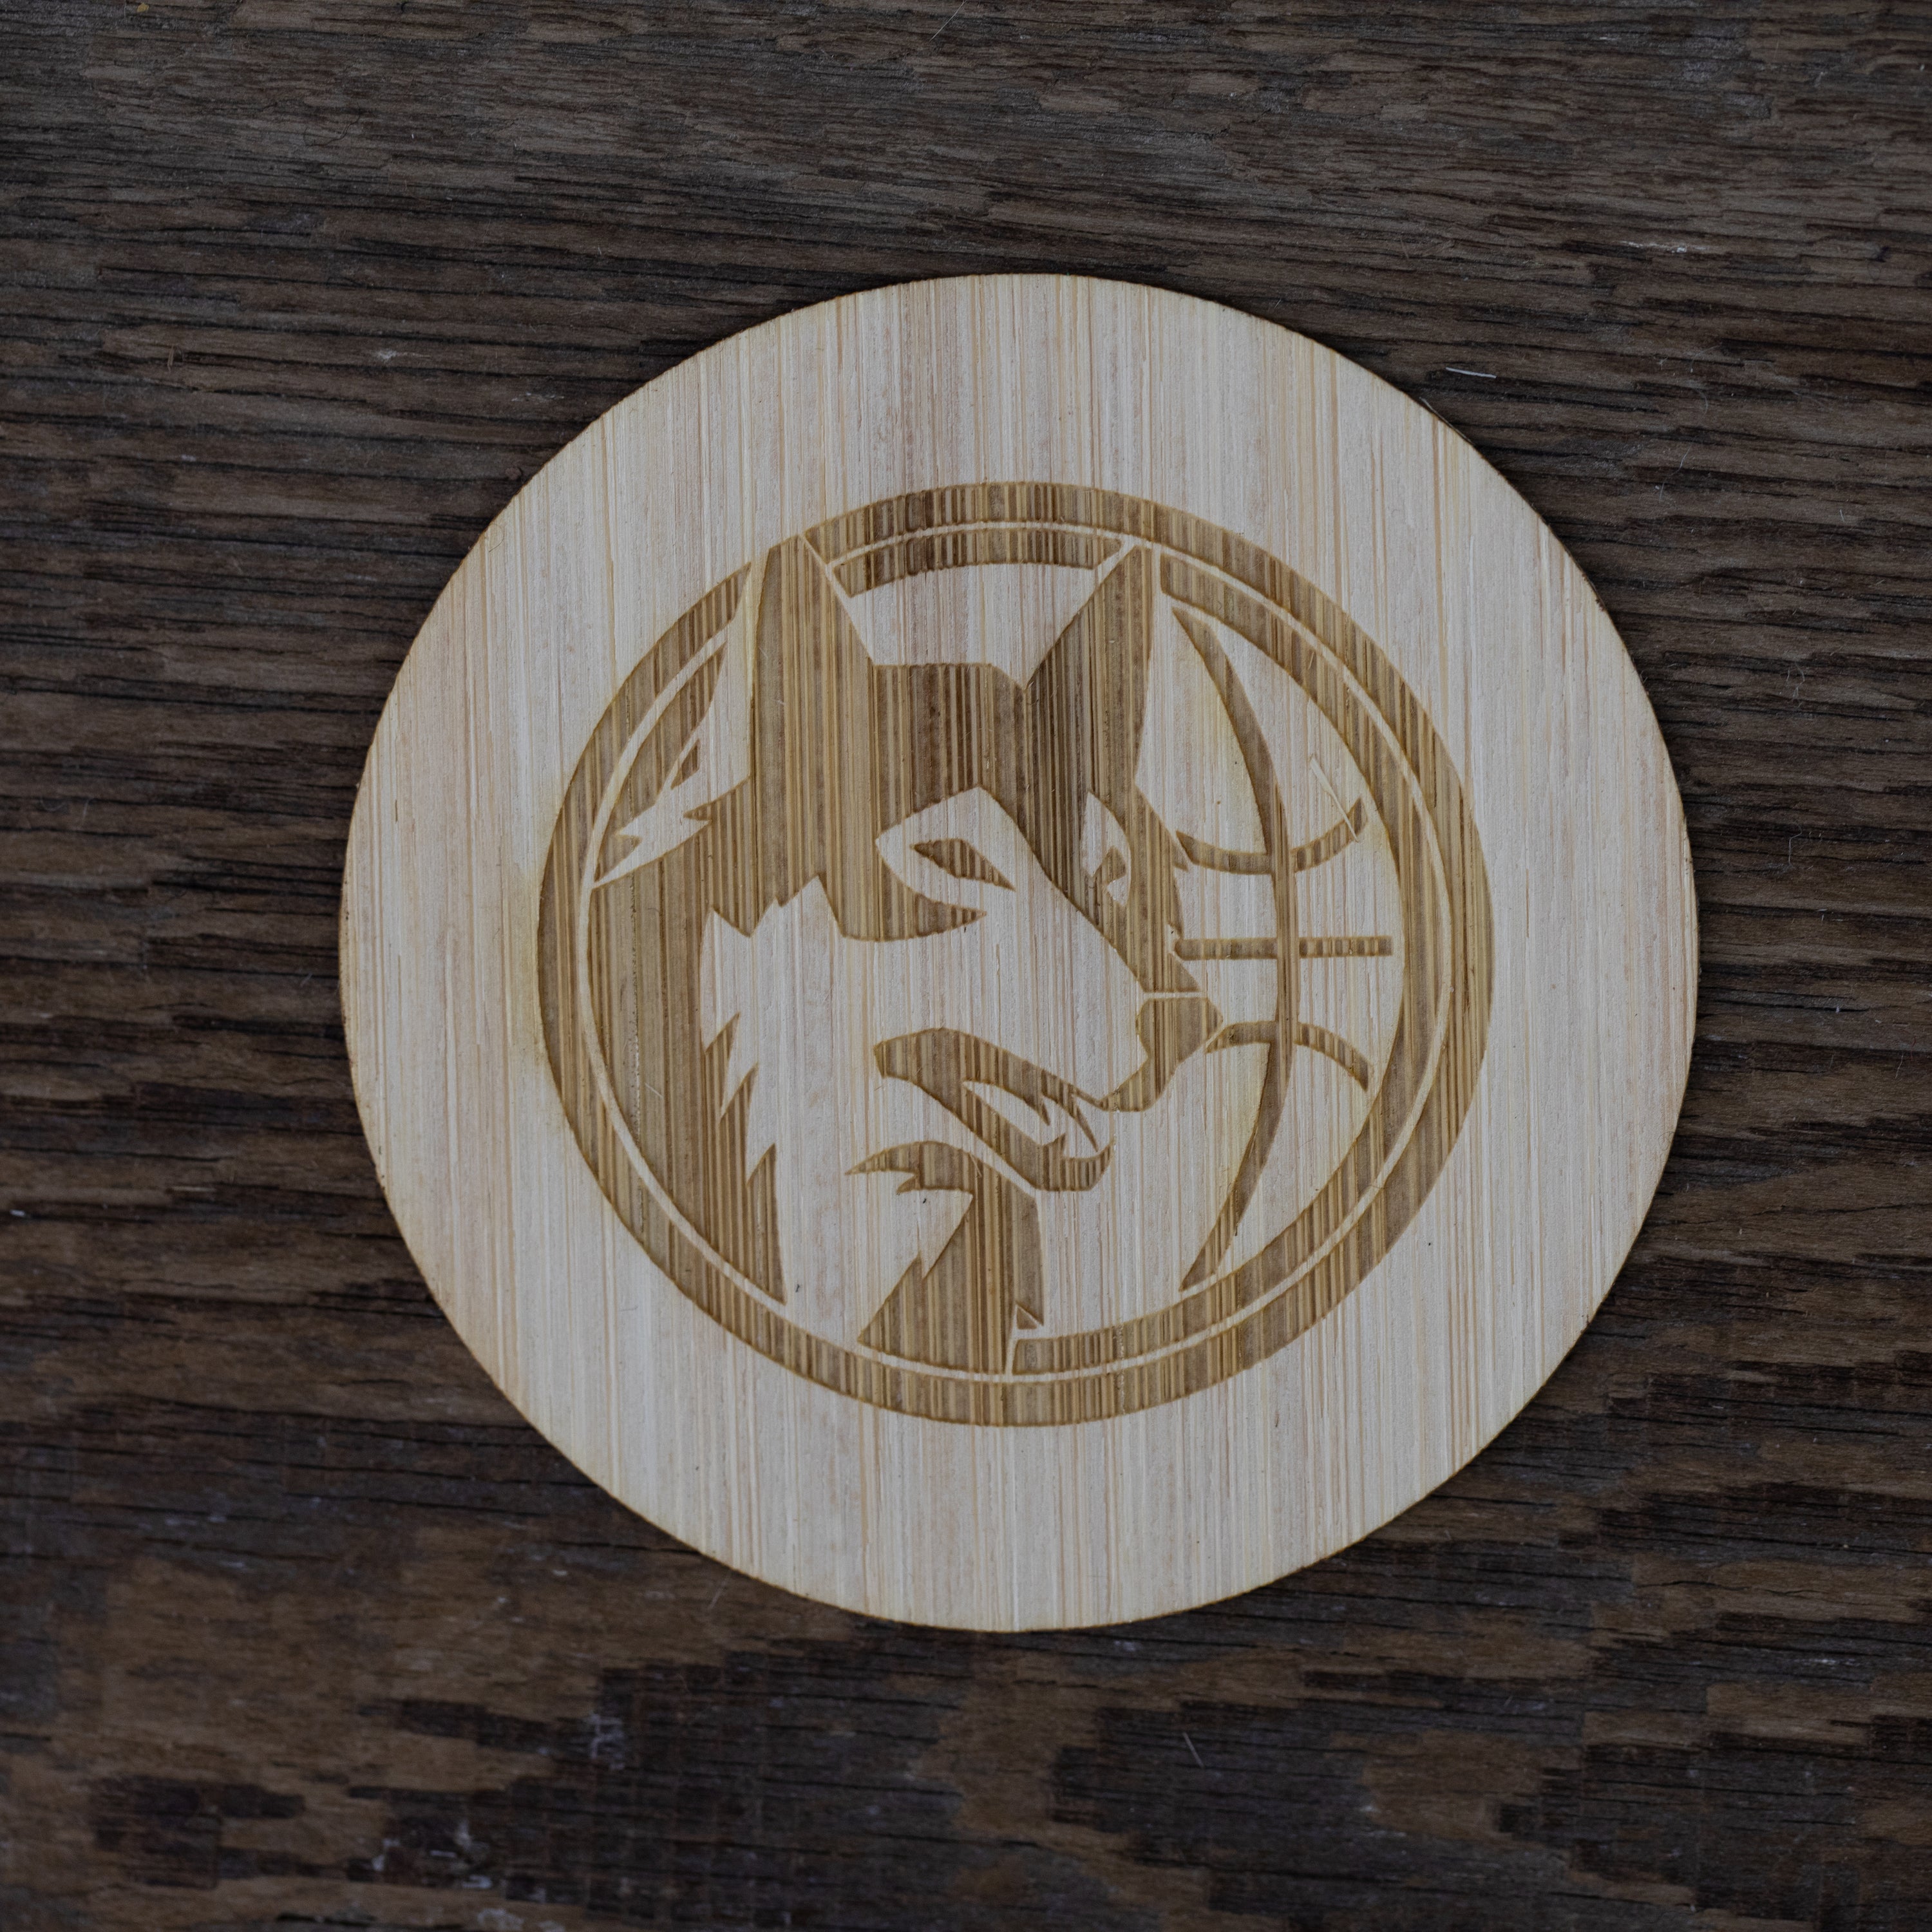 timberwolves hardwood classic